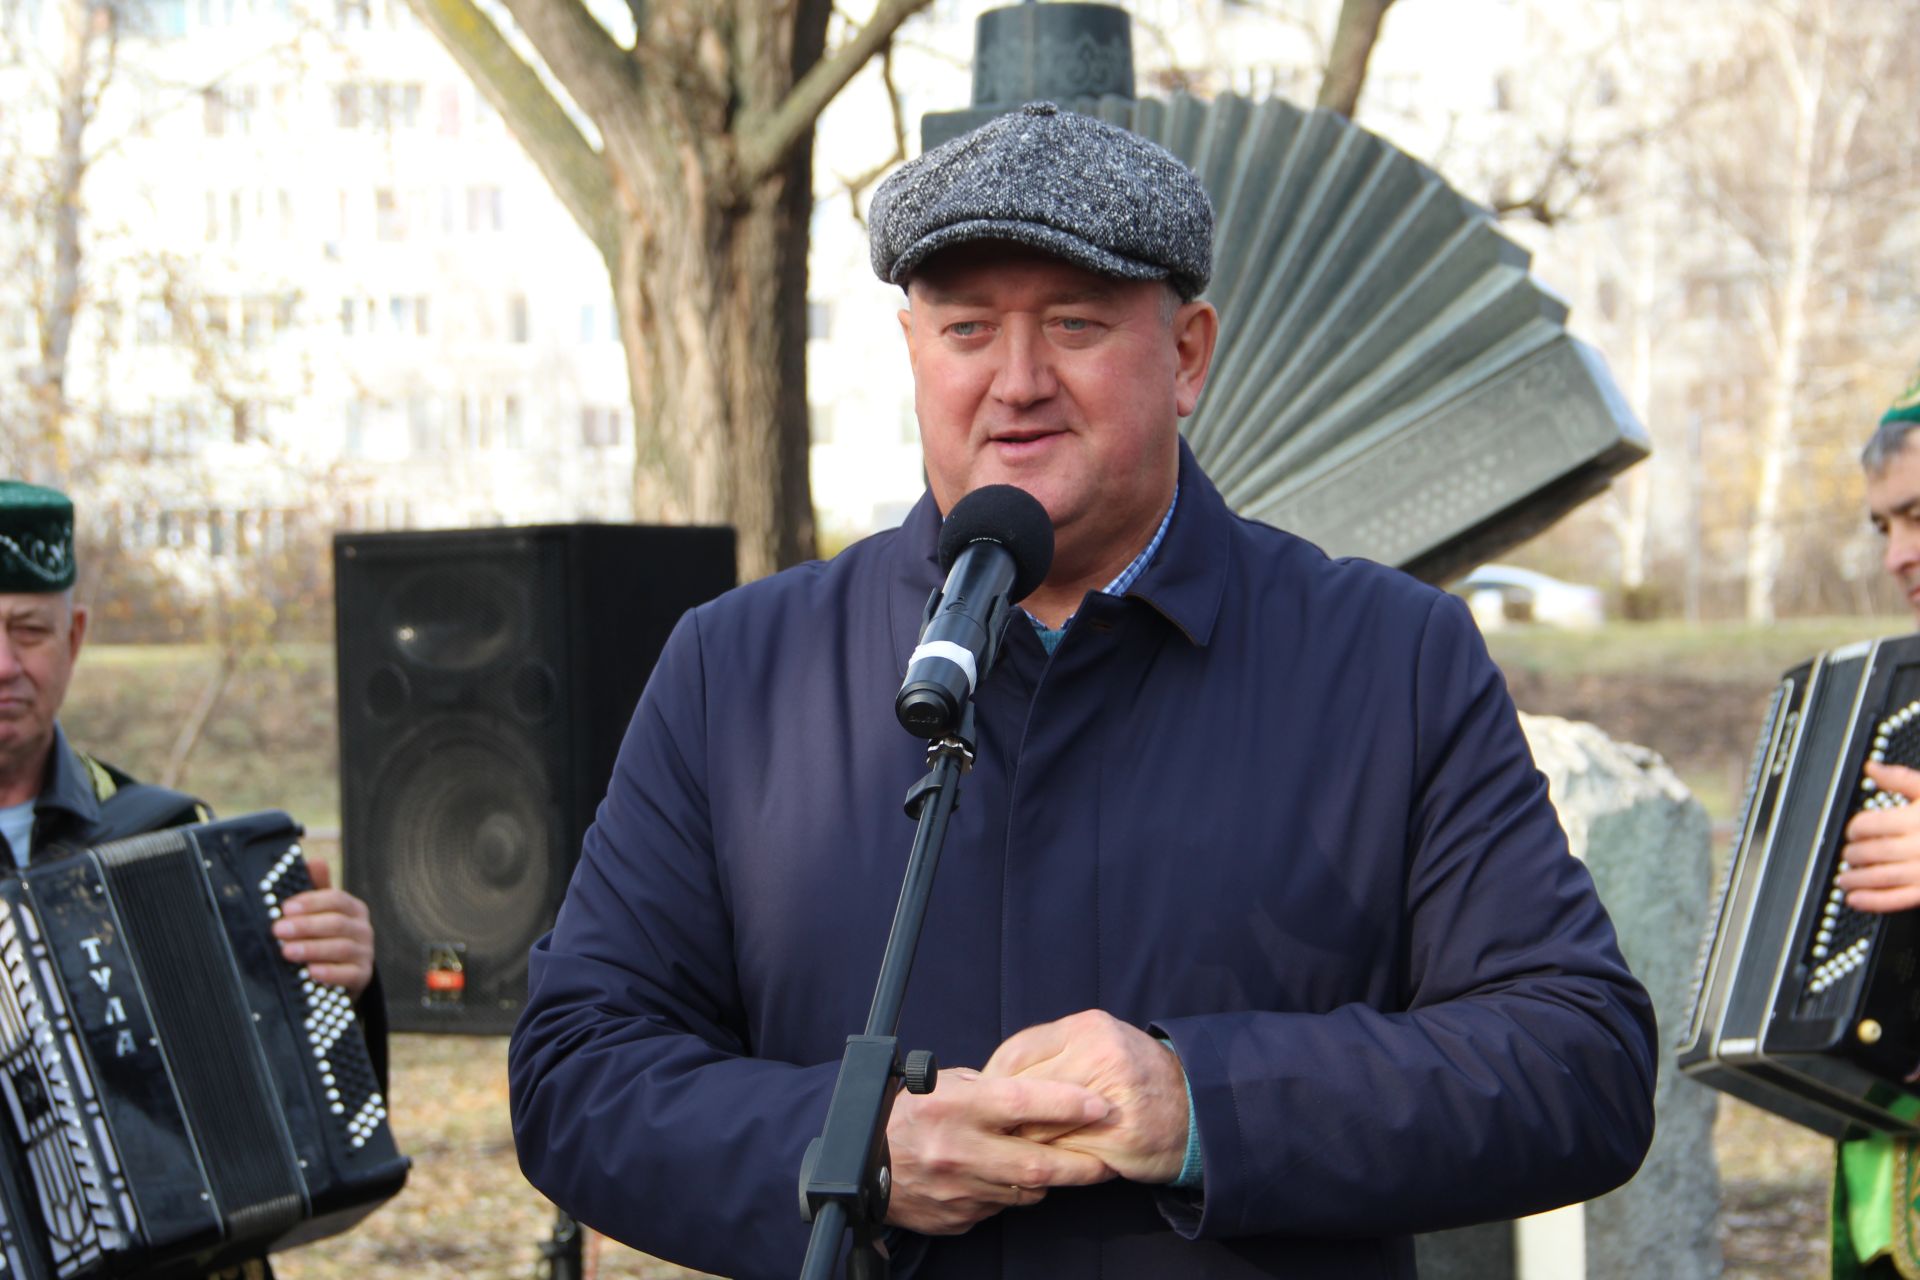 В Заинске почтили память бывшего главы района Рината Фардиева